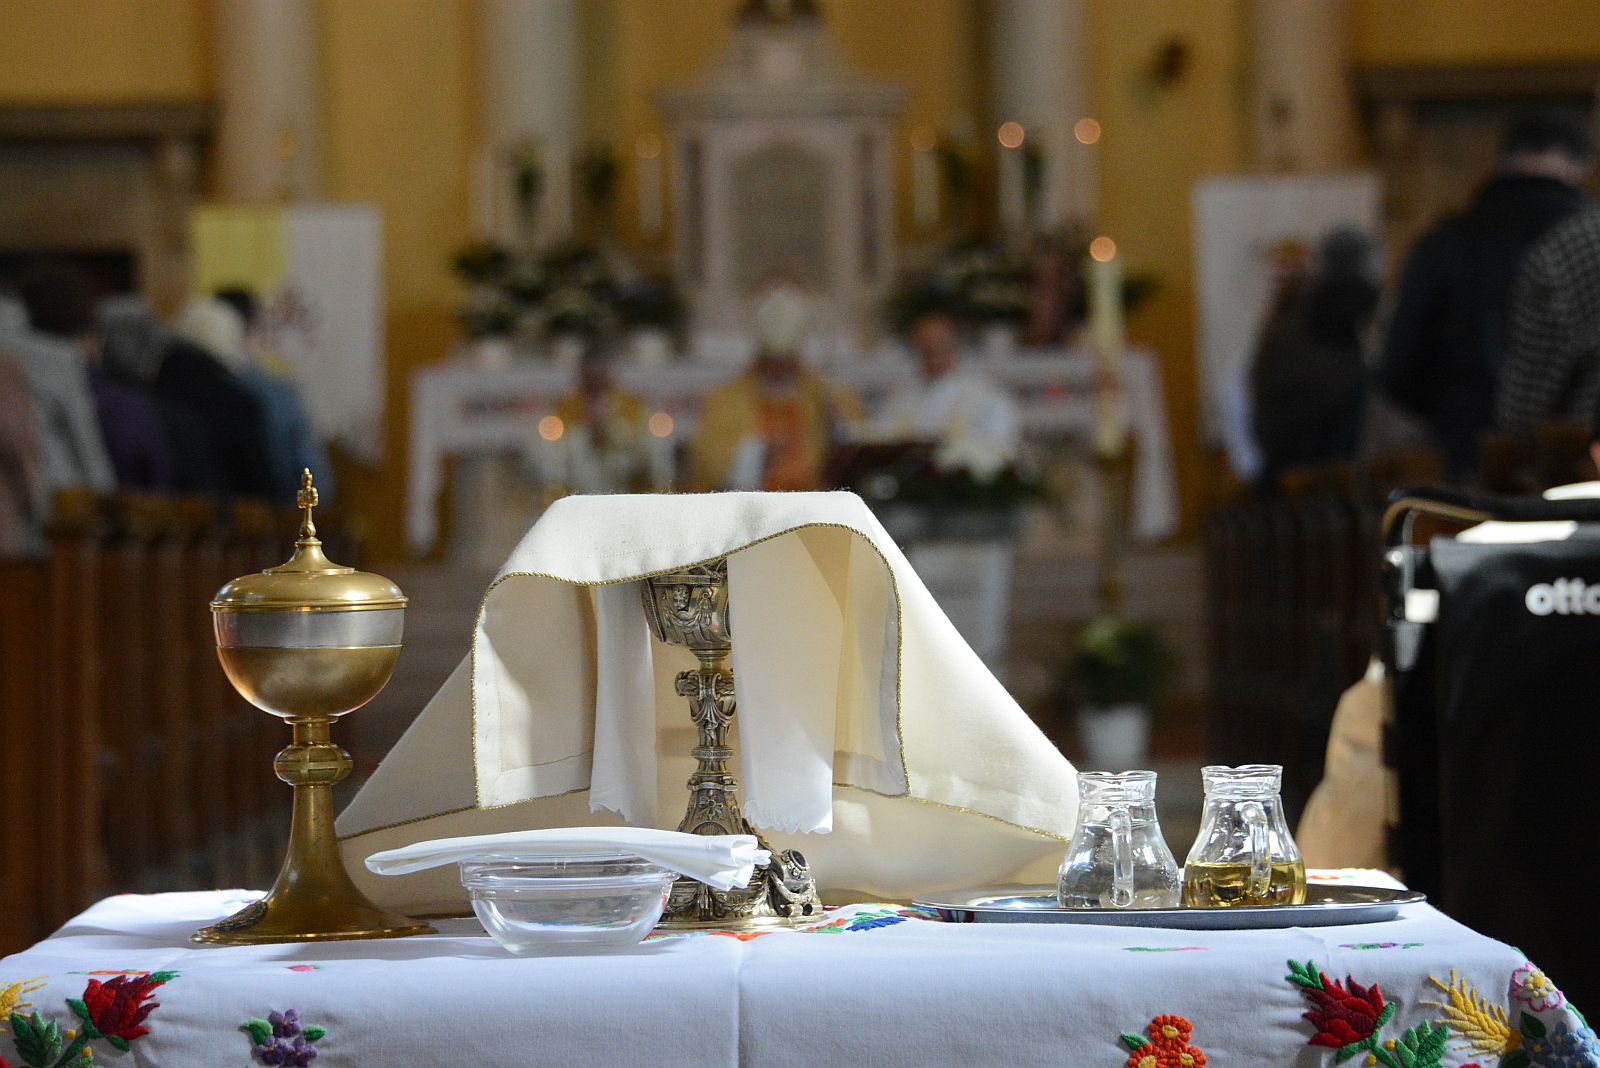 100 éves a Prohászka Egyházközség - élő szentmise közvetítés május 3-án